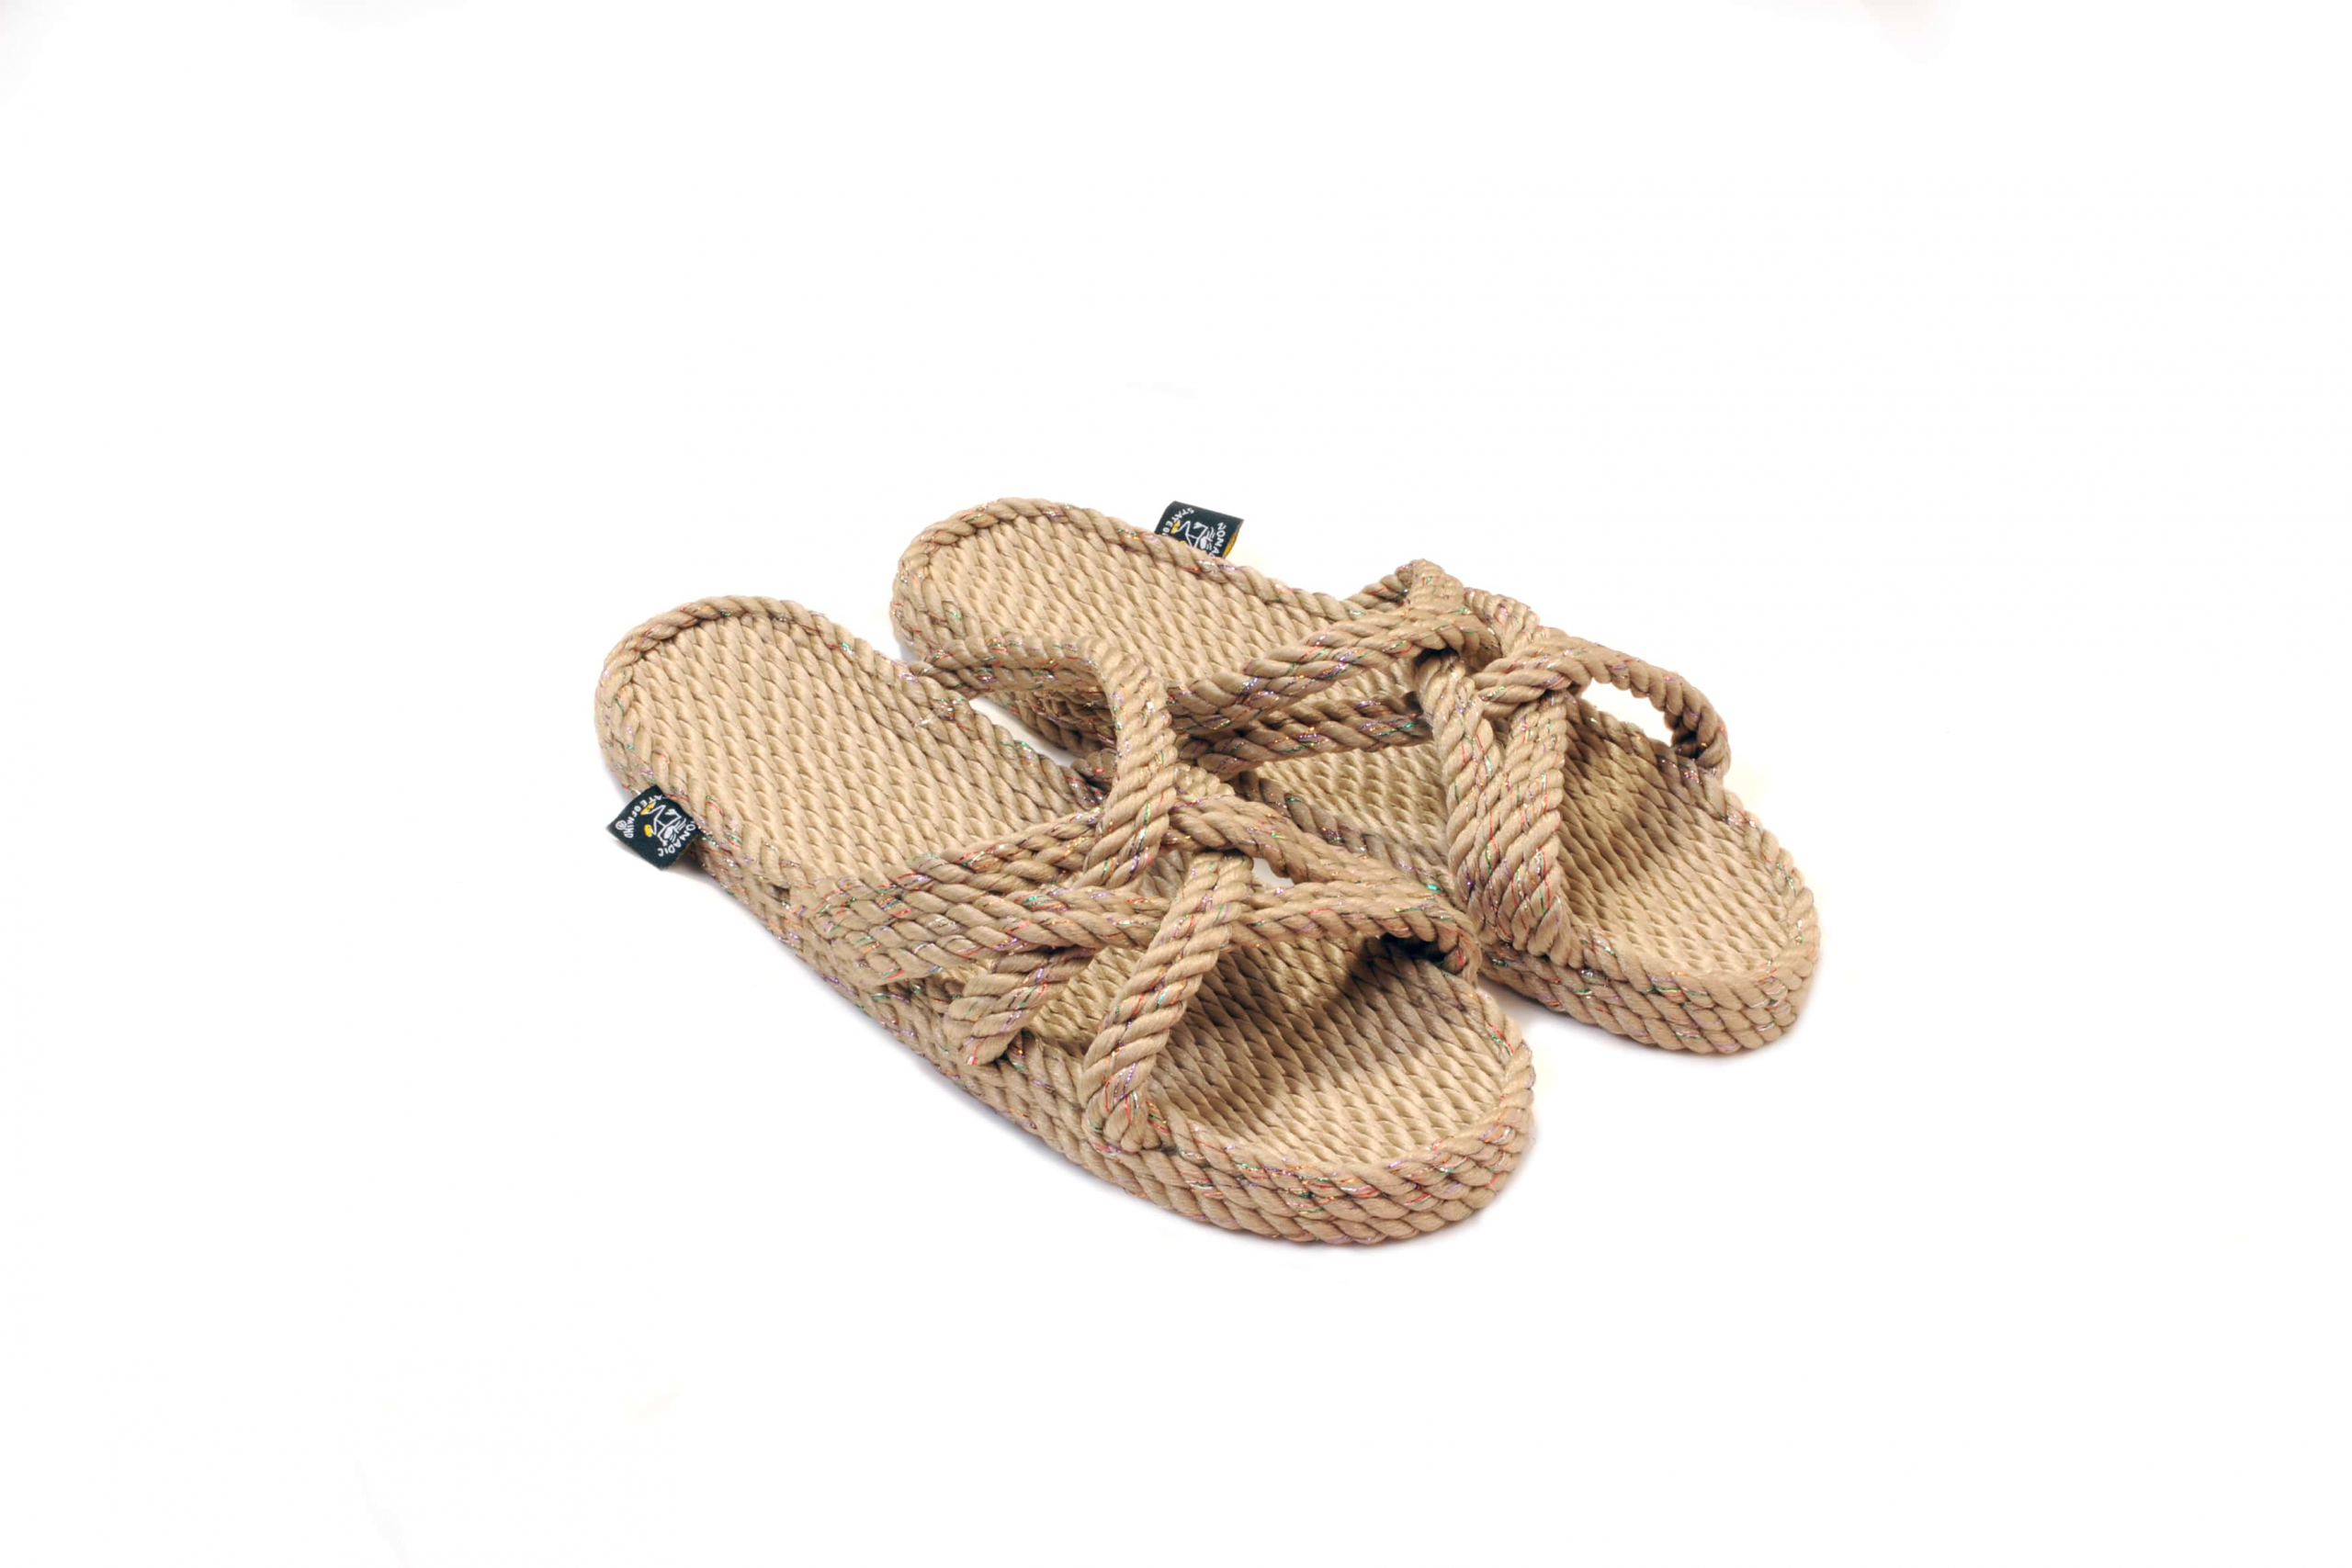 Sandales en corde, sandales boho, nomadic state of mind, sandals for men, sandales for women, modèle Slip on-Disco beige